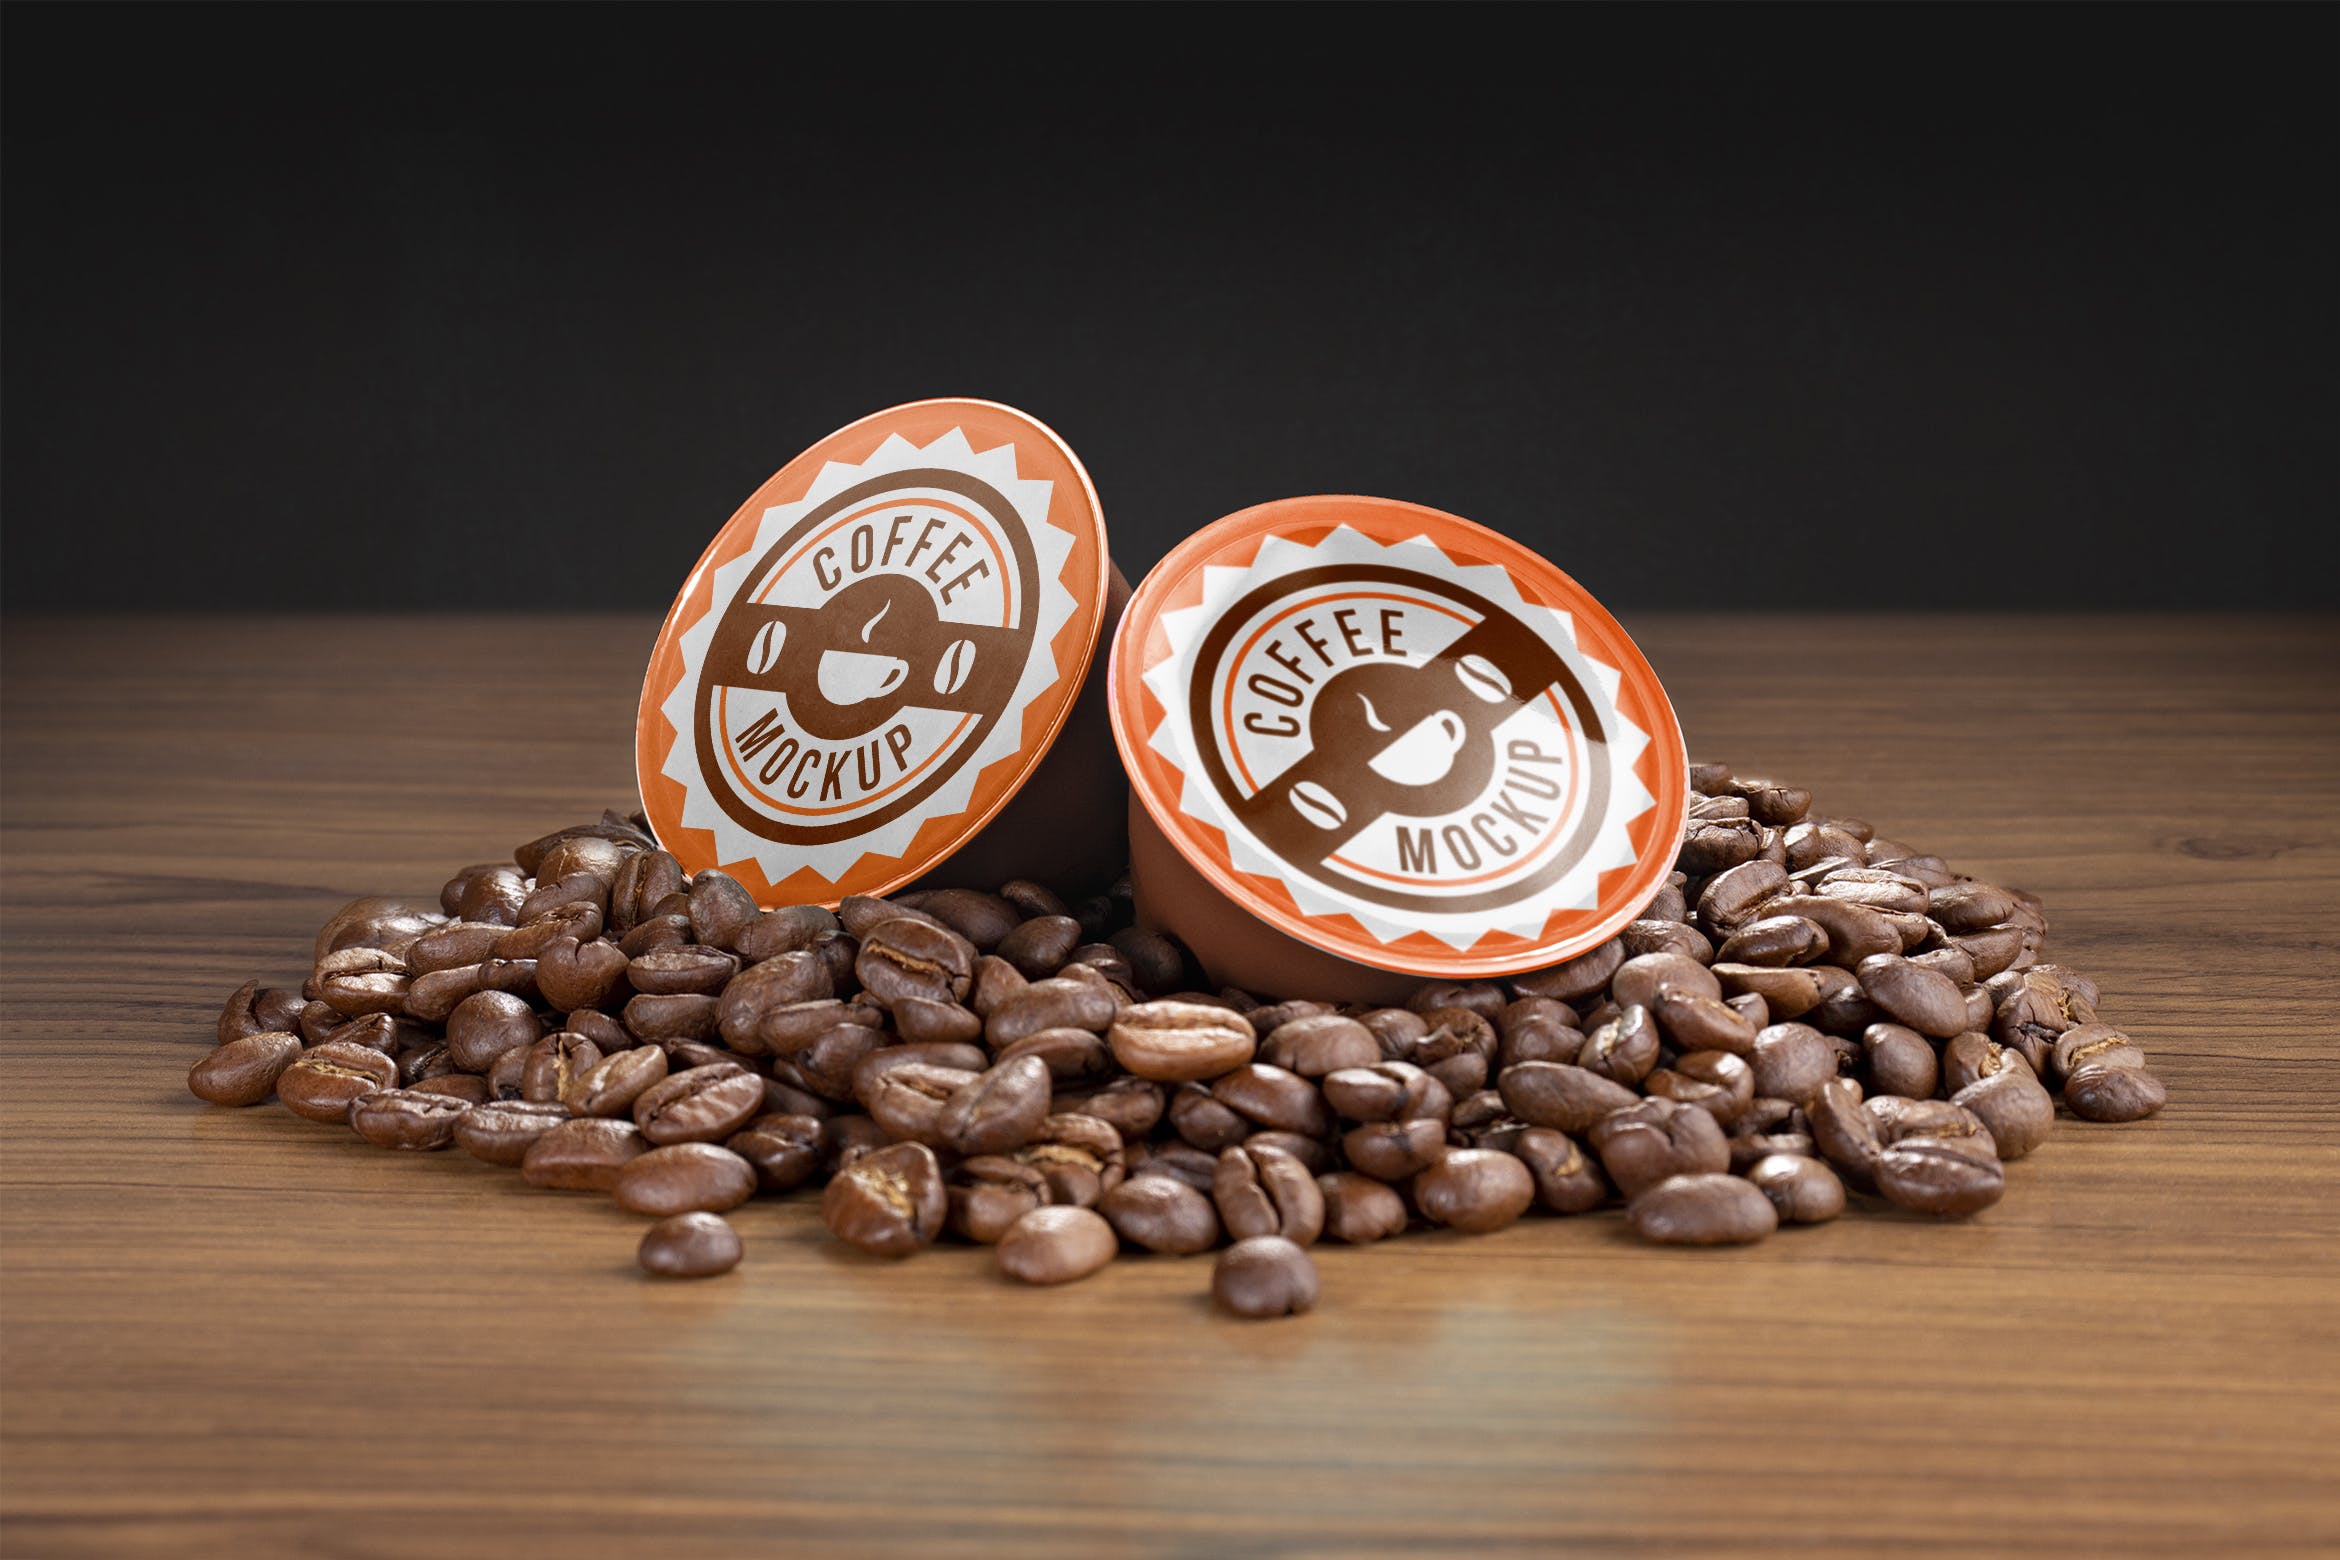 咖啡胶囊外包装设计蚂蚁素材精选模板 Coffee capsule mockup插图